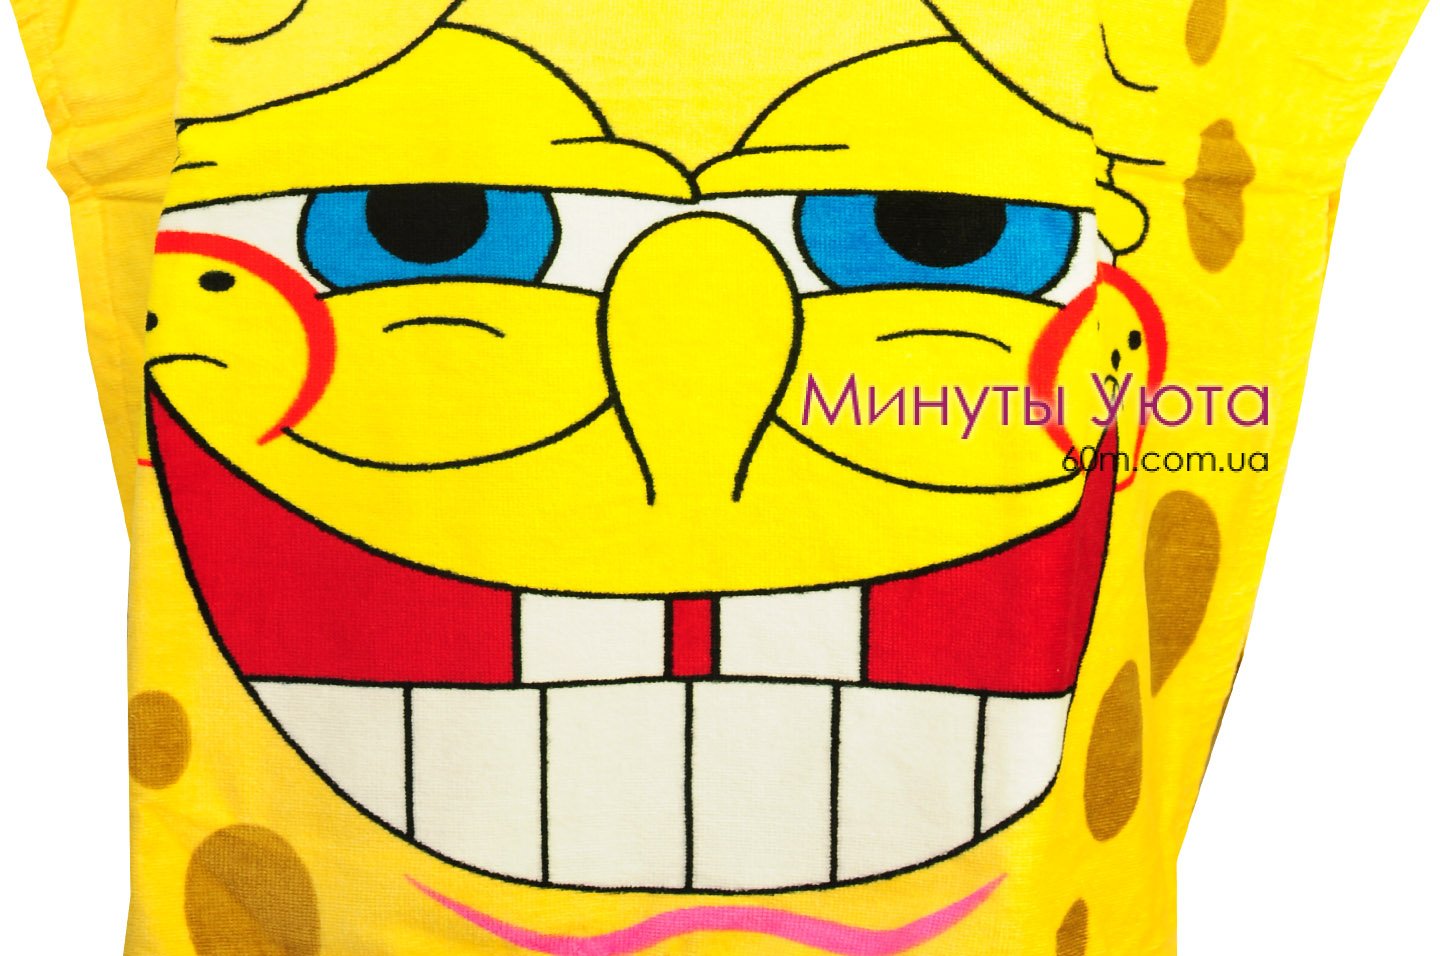 Пляжное полотенце-пончо Sponge Bob Turkey